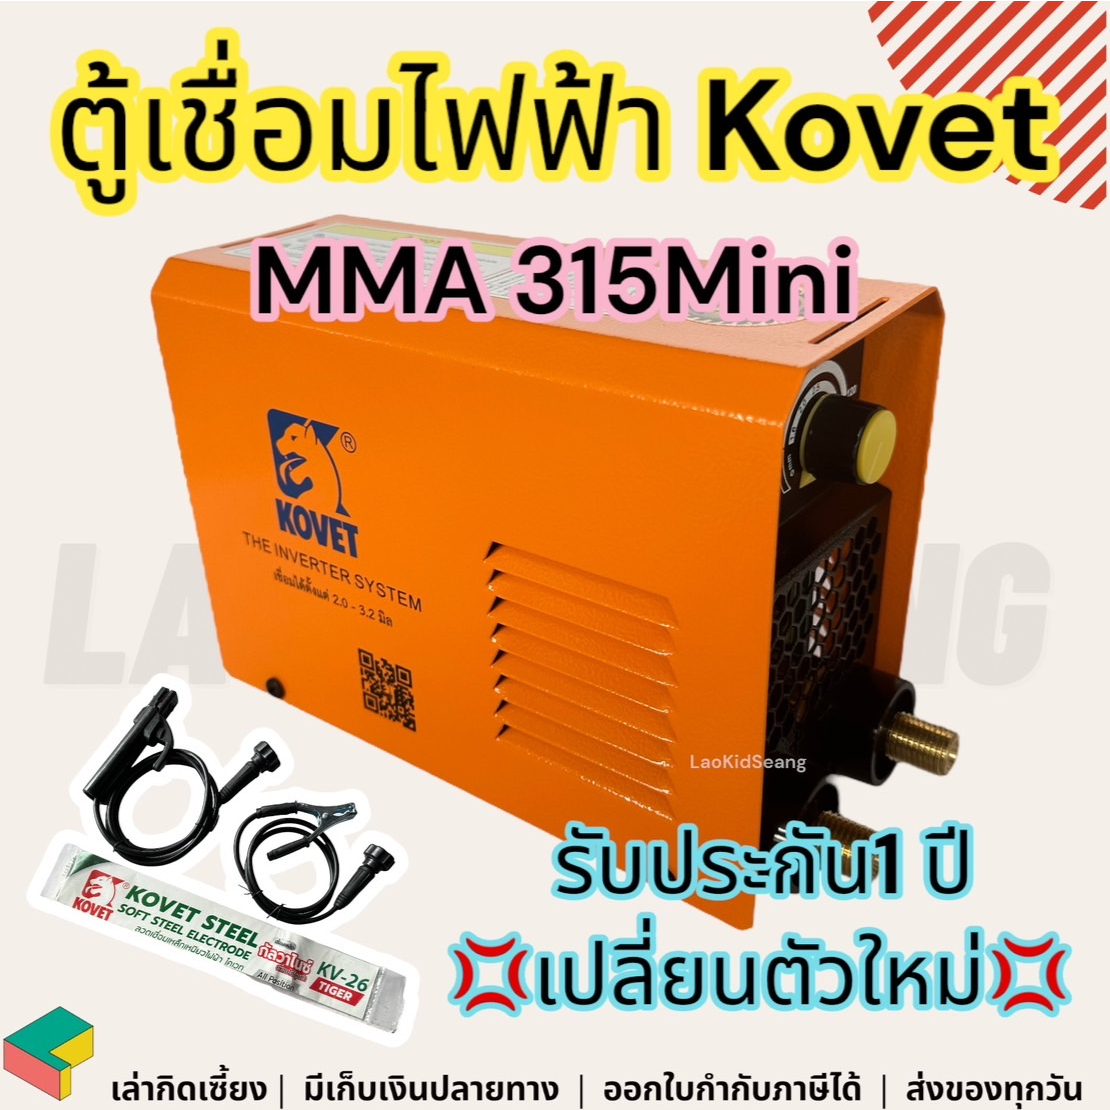 ตู้เชื่อม Kovet MMA 315 Mini ตู้เชื่อมไฟฟ้า เครื่องเชื่อม ตู้เชื่อมมินิ ตู้เชื่อมเหล็ก ตู้เชื่อมเล็กๆ ตู้เชื่อมไฟฟ้ามินิ